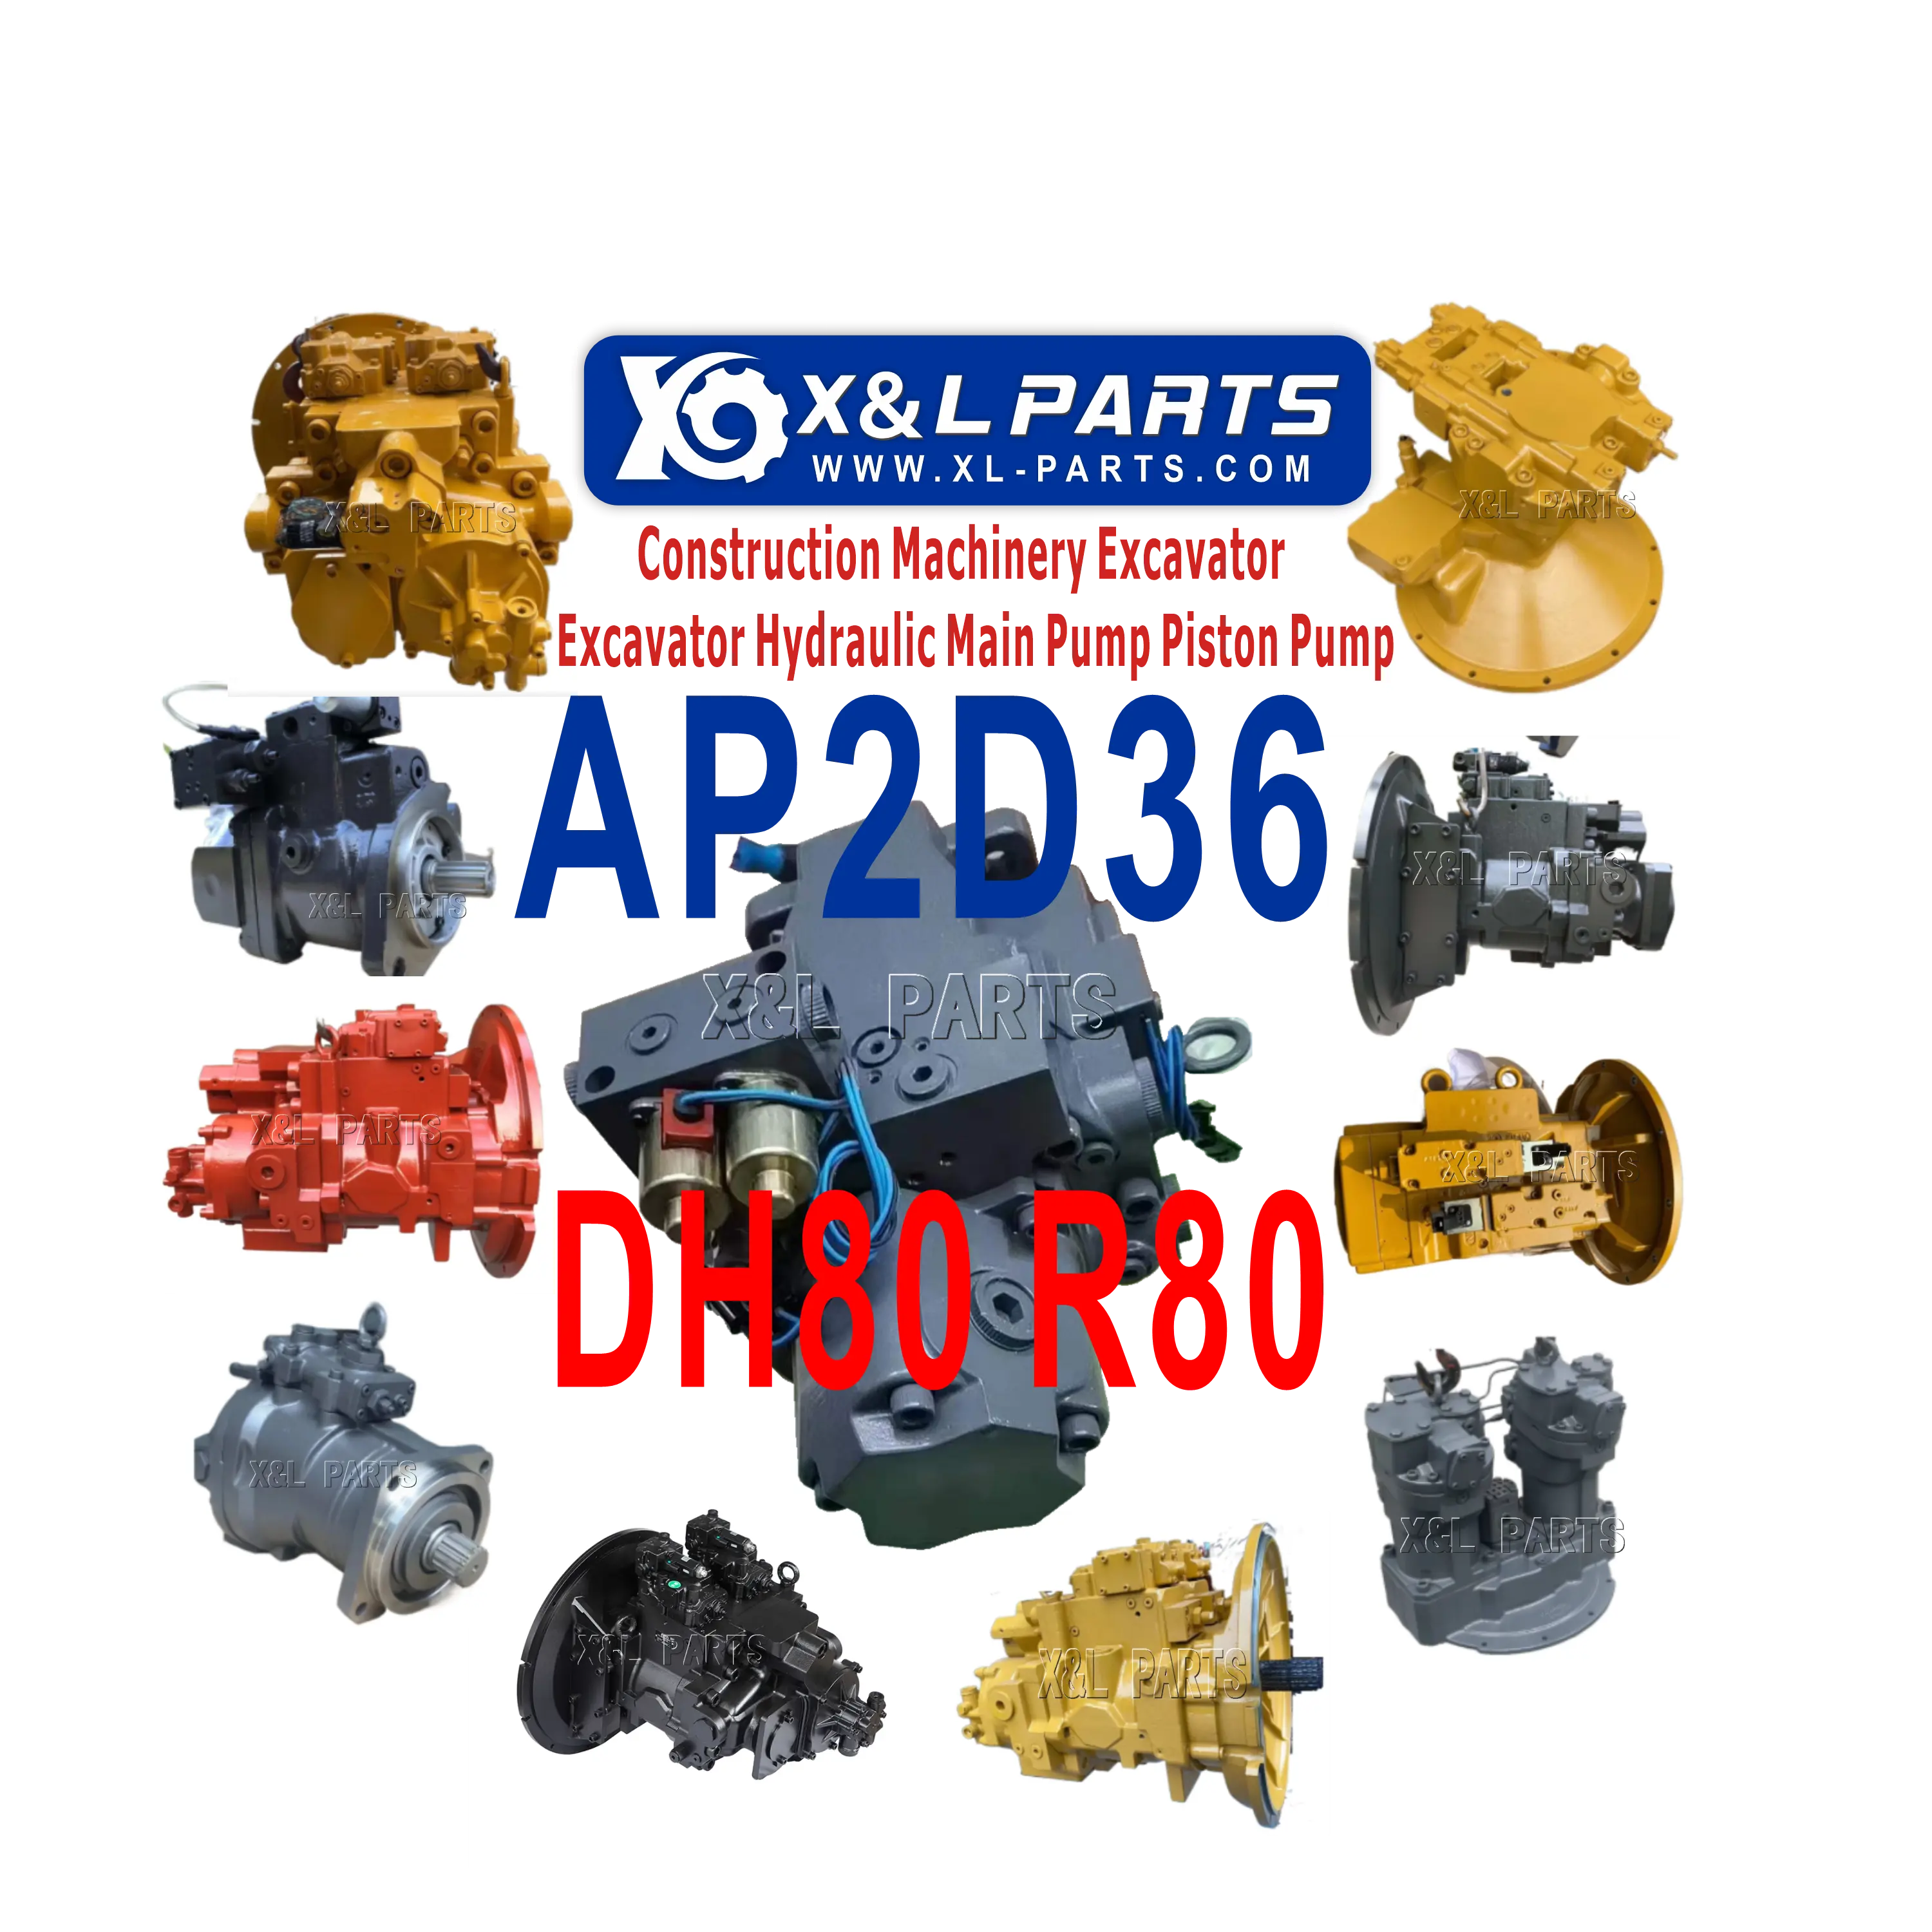 مضخة هيدروليكية مع صمام ملف اللولبي من X&L-parts AP2D36-LV1PS7-880-0 31N1-10011 لـ Hyundai Excavator R80 لـ Daewoo Excavator DH80